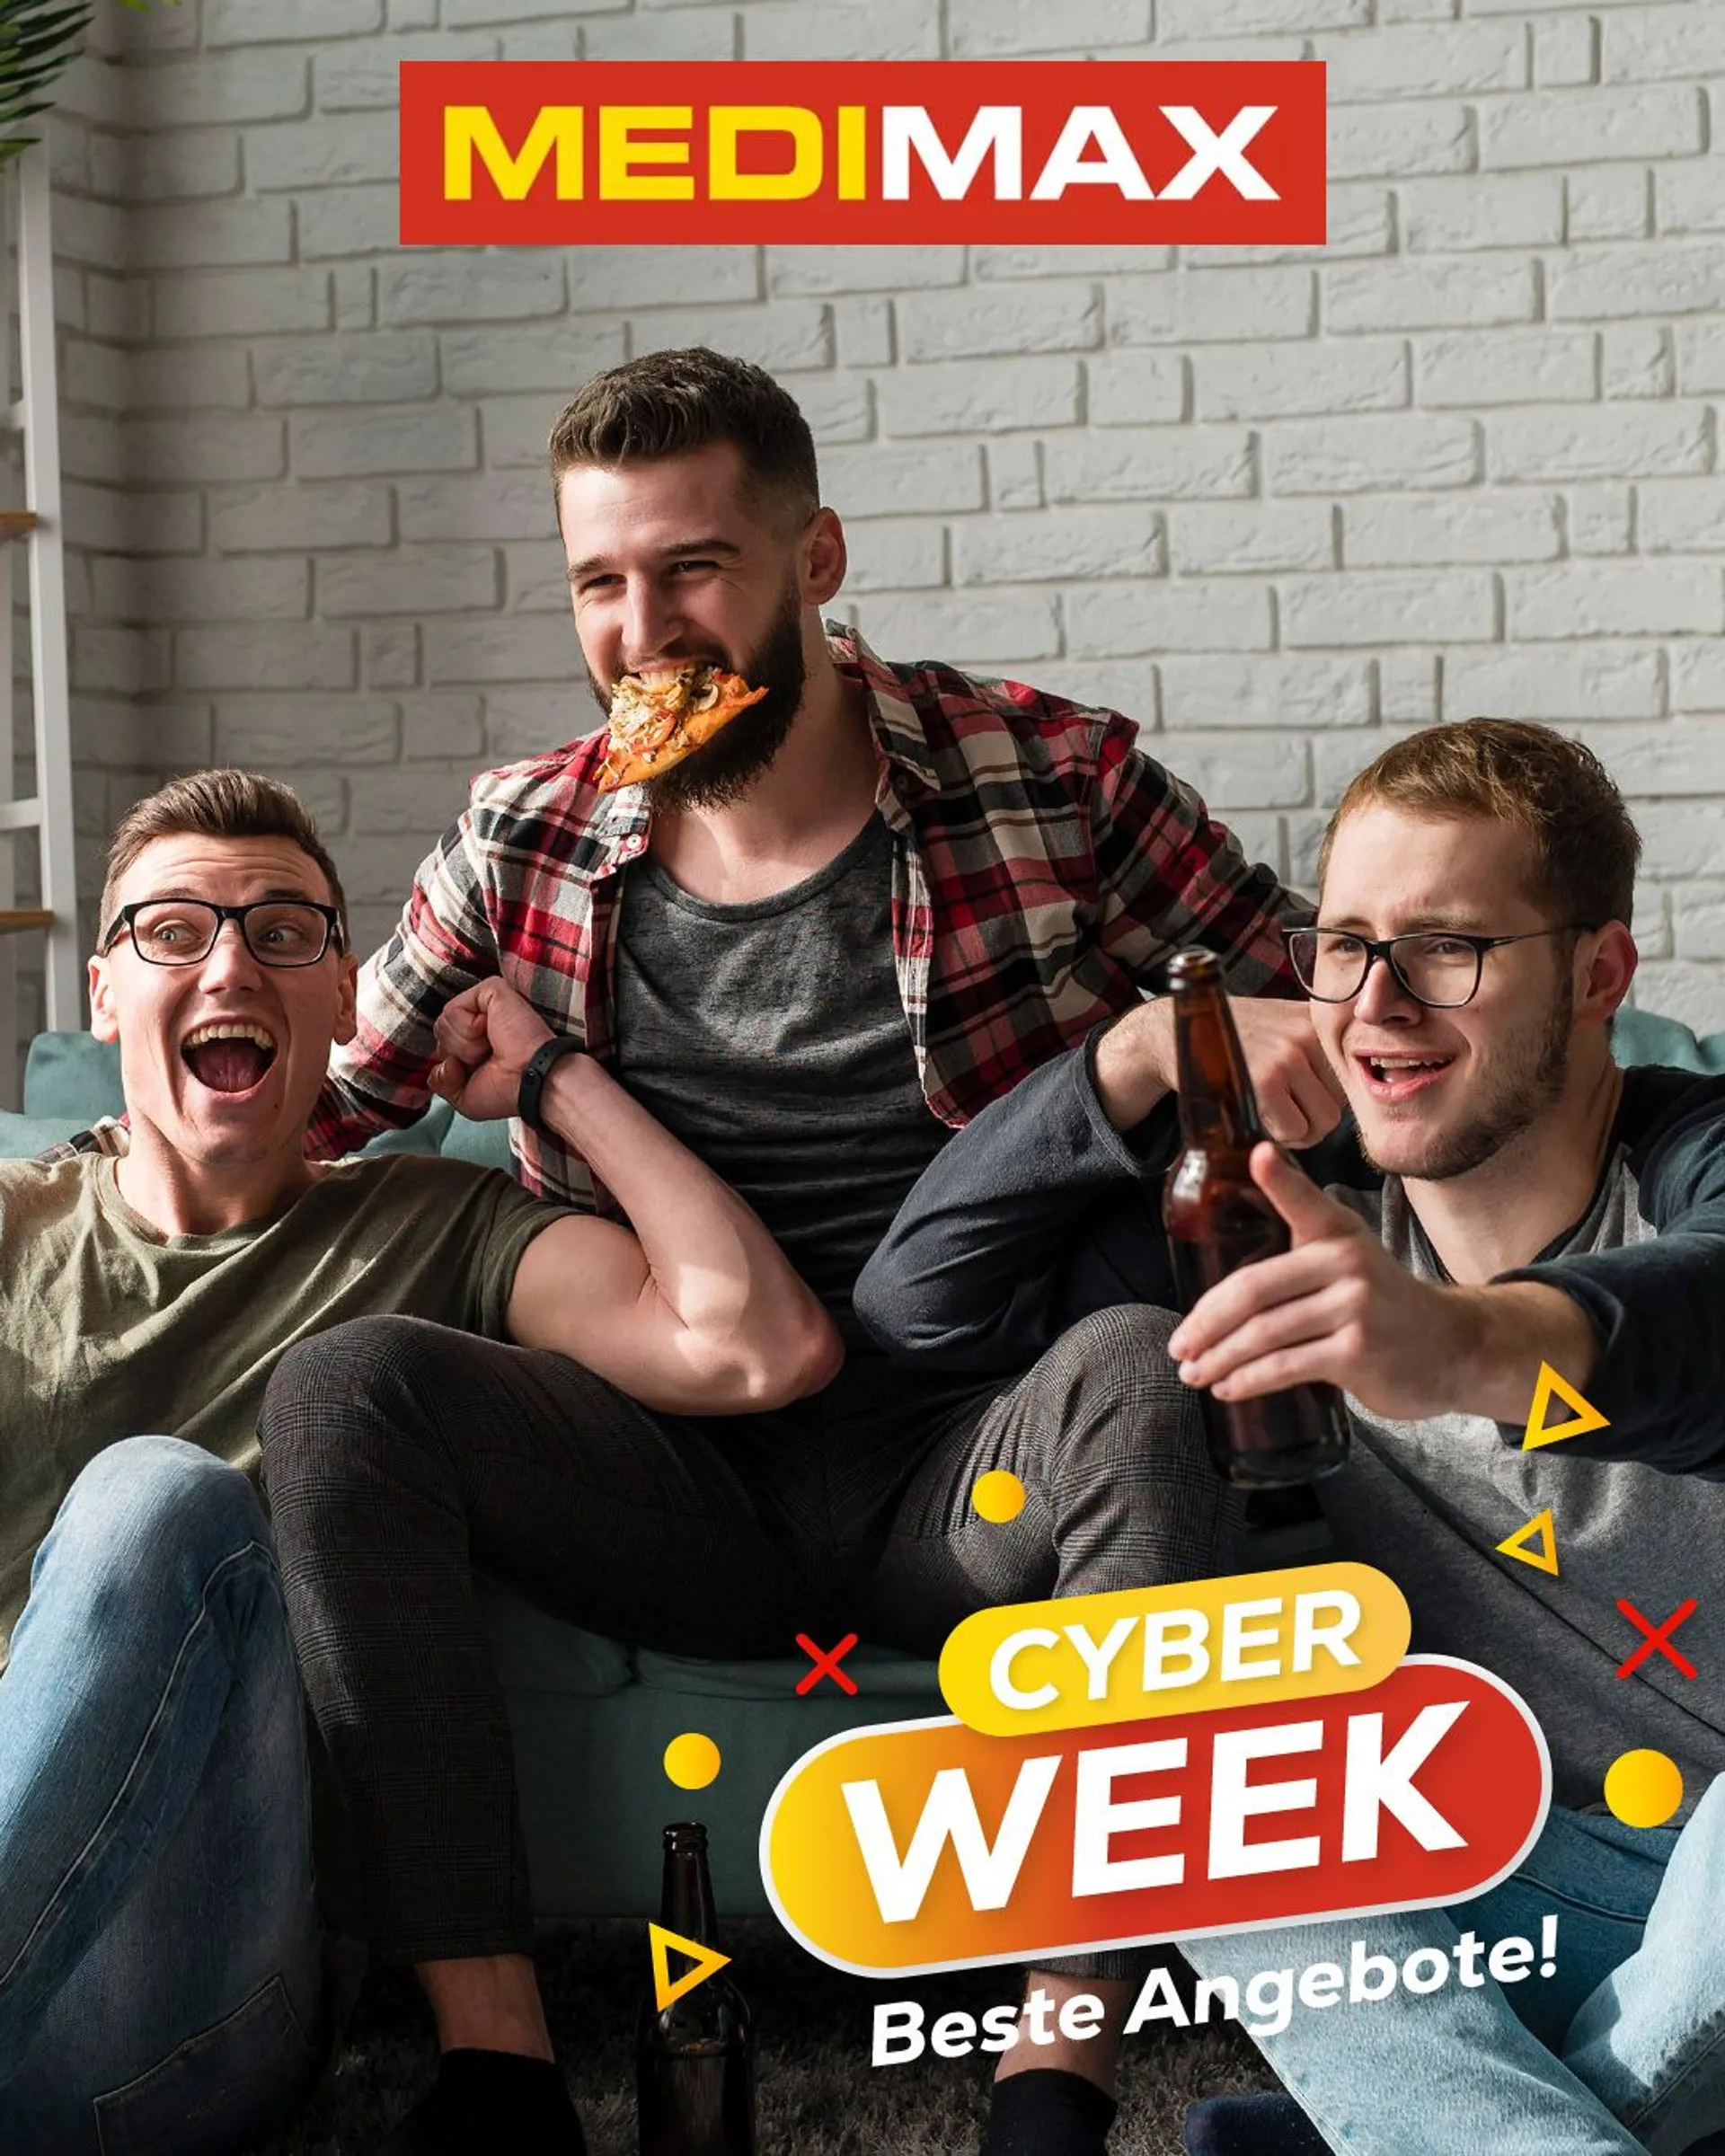 MEDIMAX - Cyber Week